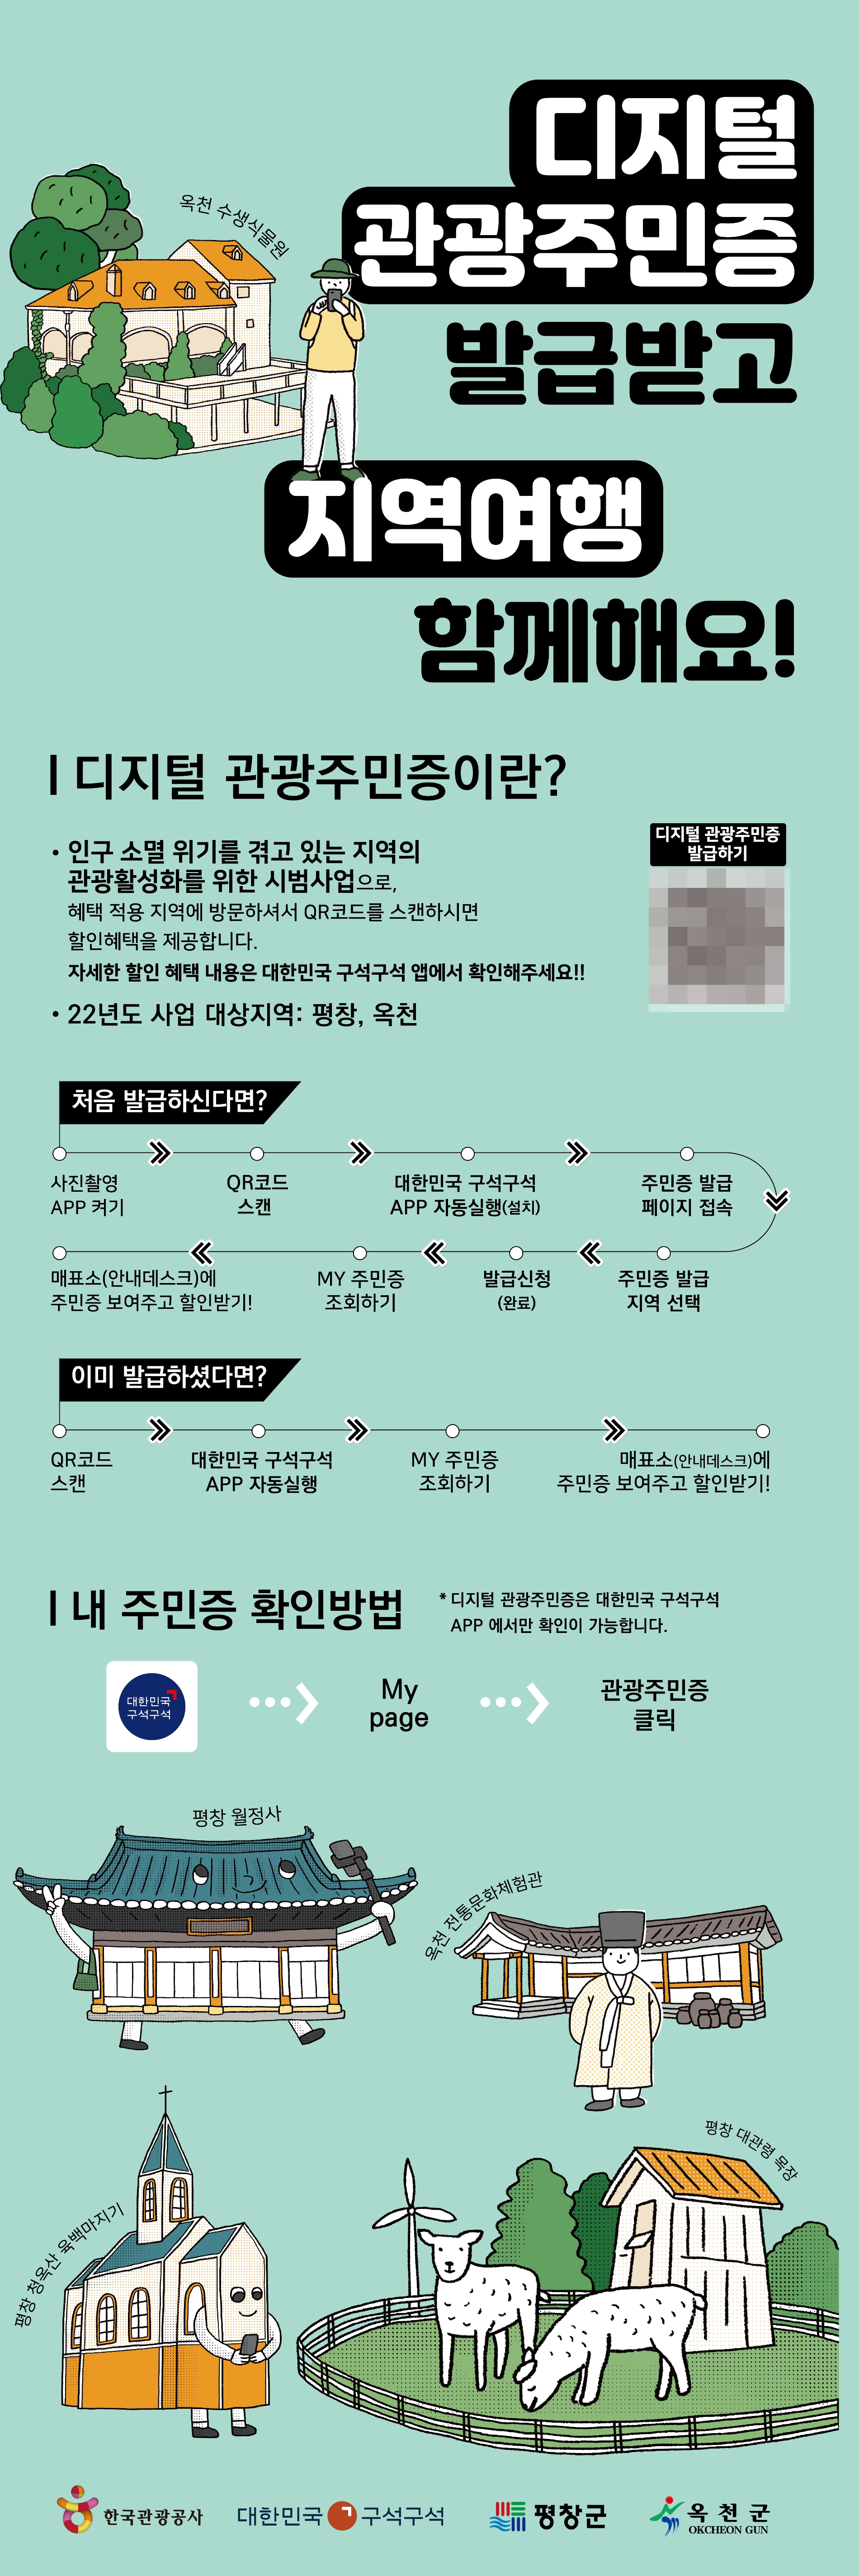 디지털 관광주민증 홍보 포스터. /사진제공=한국관광공사